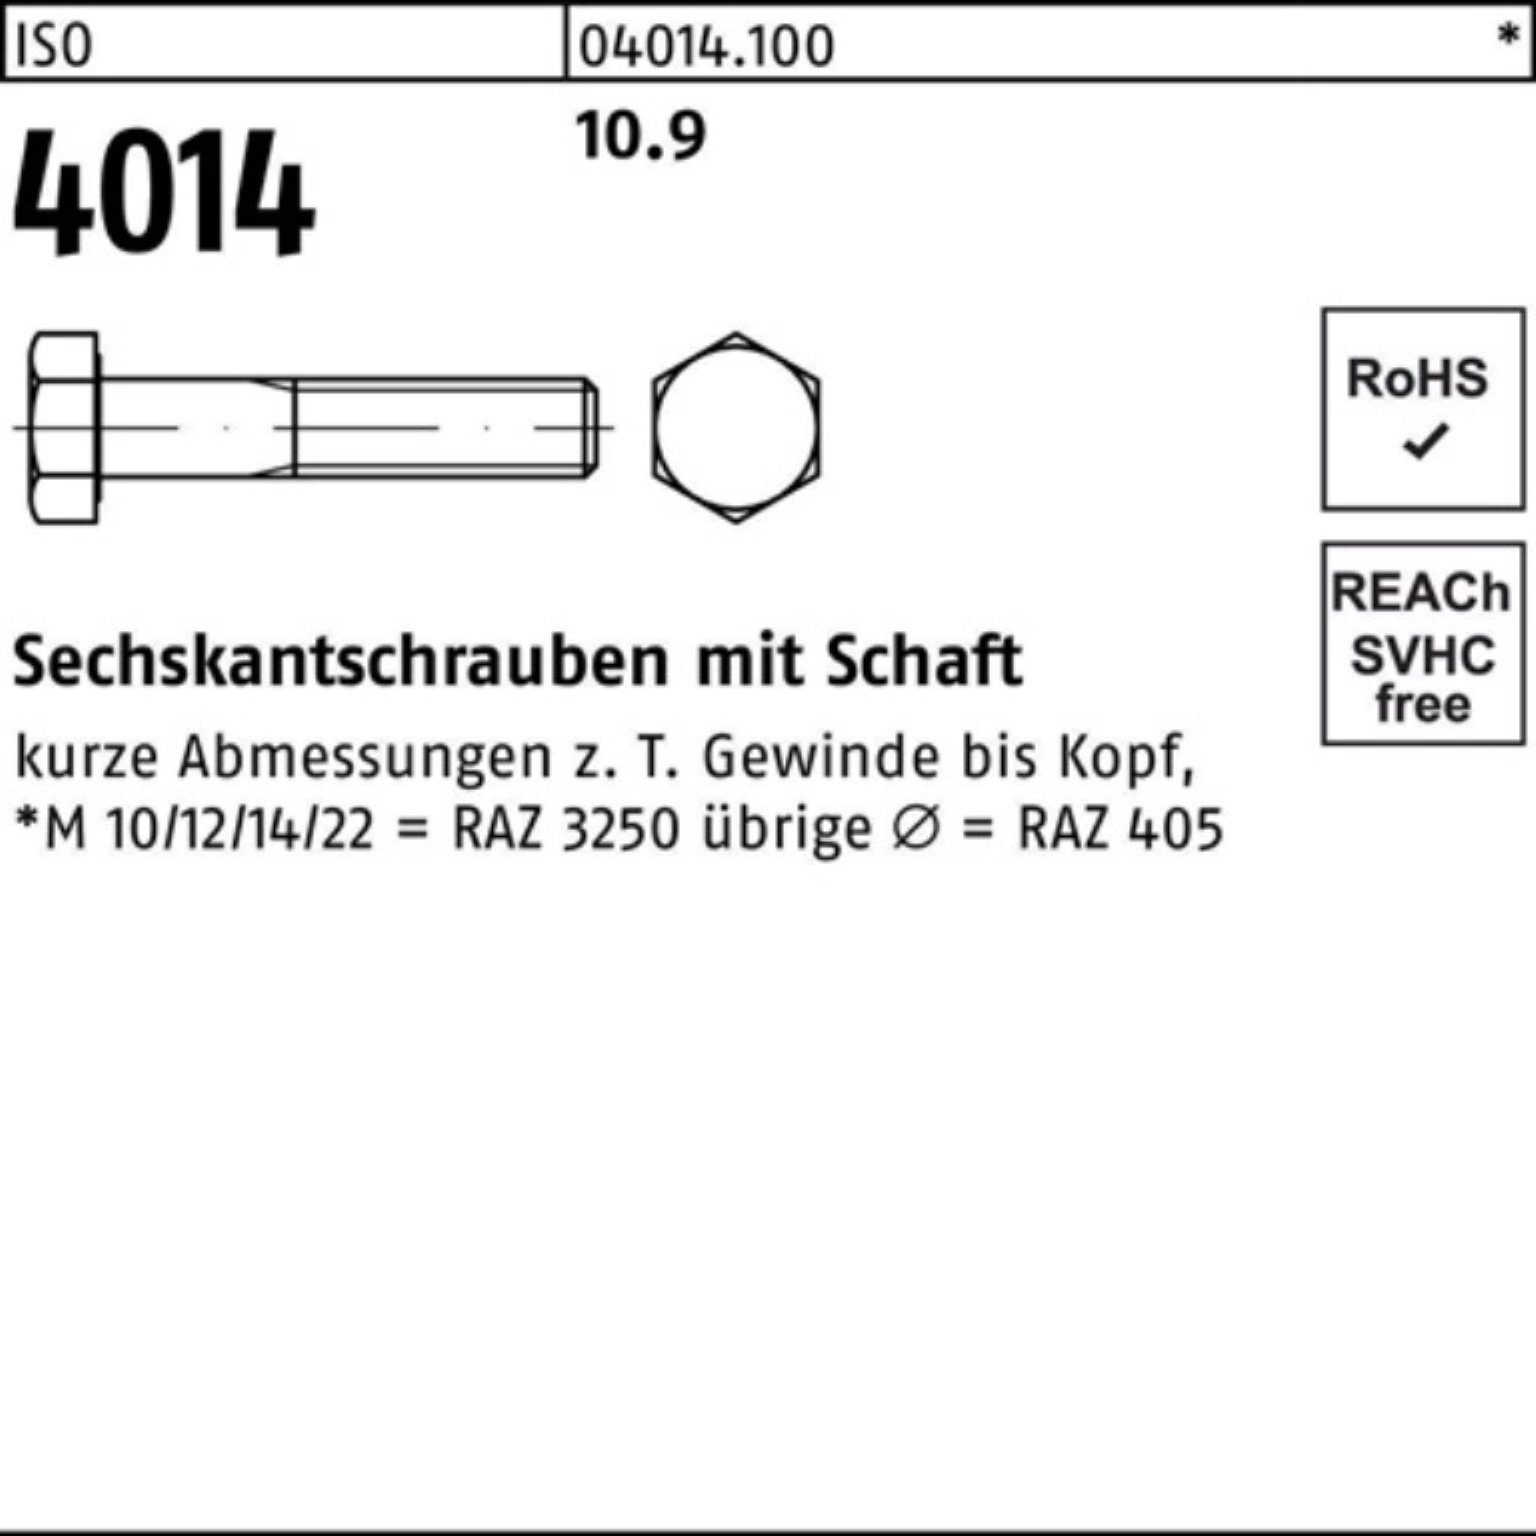 Schaft 55 Sechskantschraube 10.9 M16x 4014 IS 100er ISO Stück Bufab Pack Sechskantschraube 50